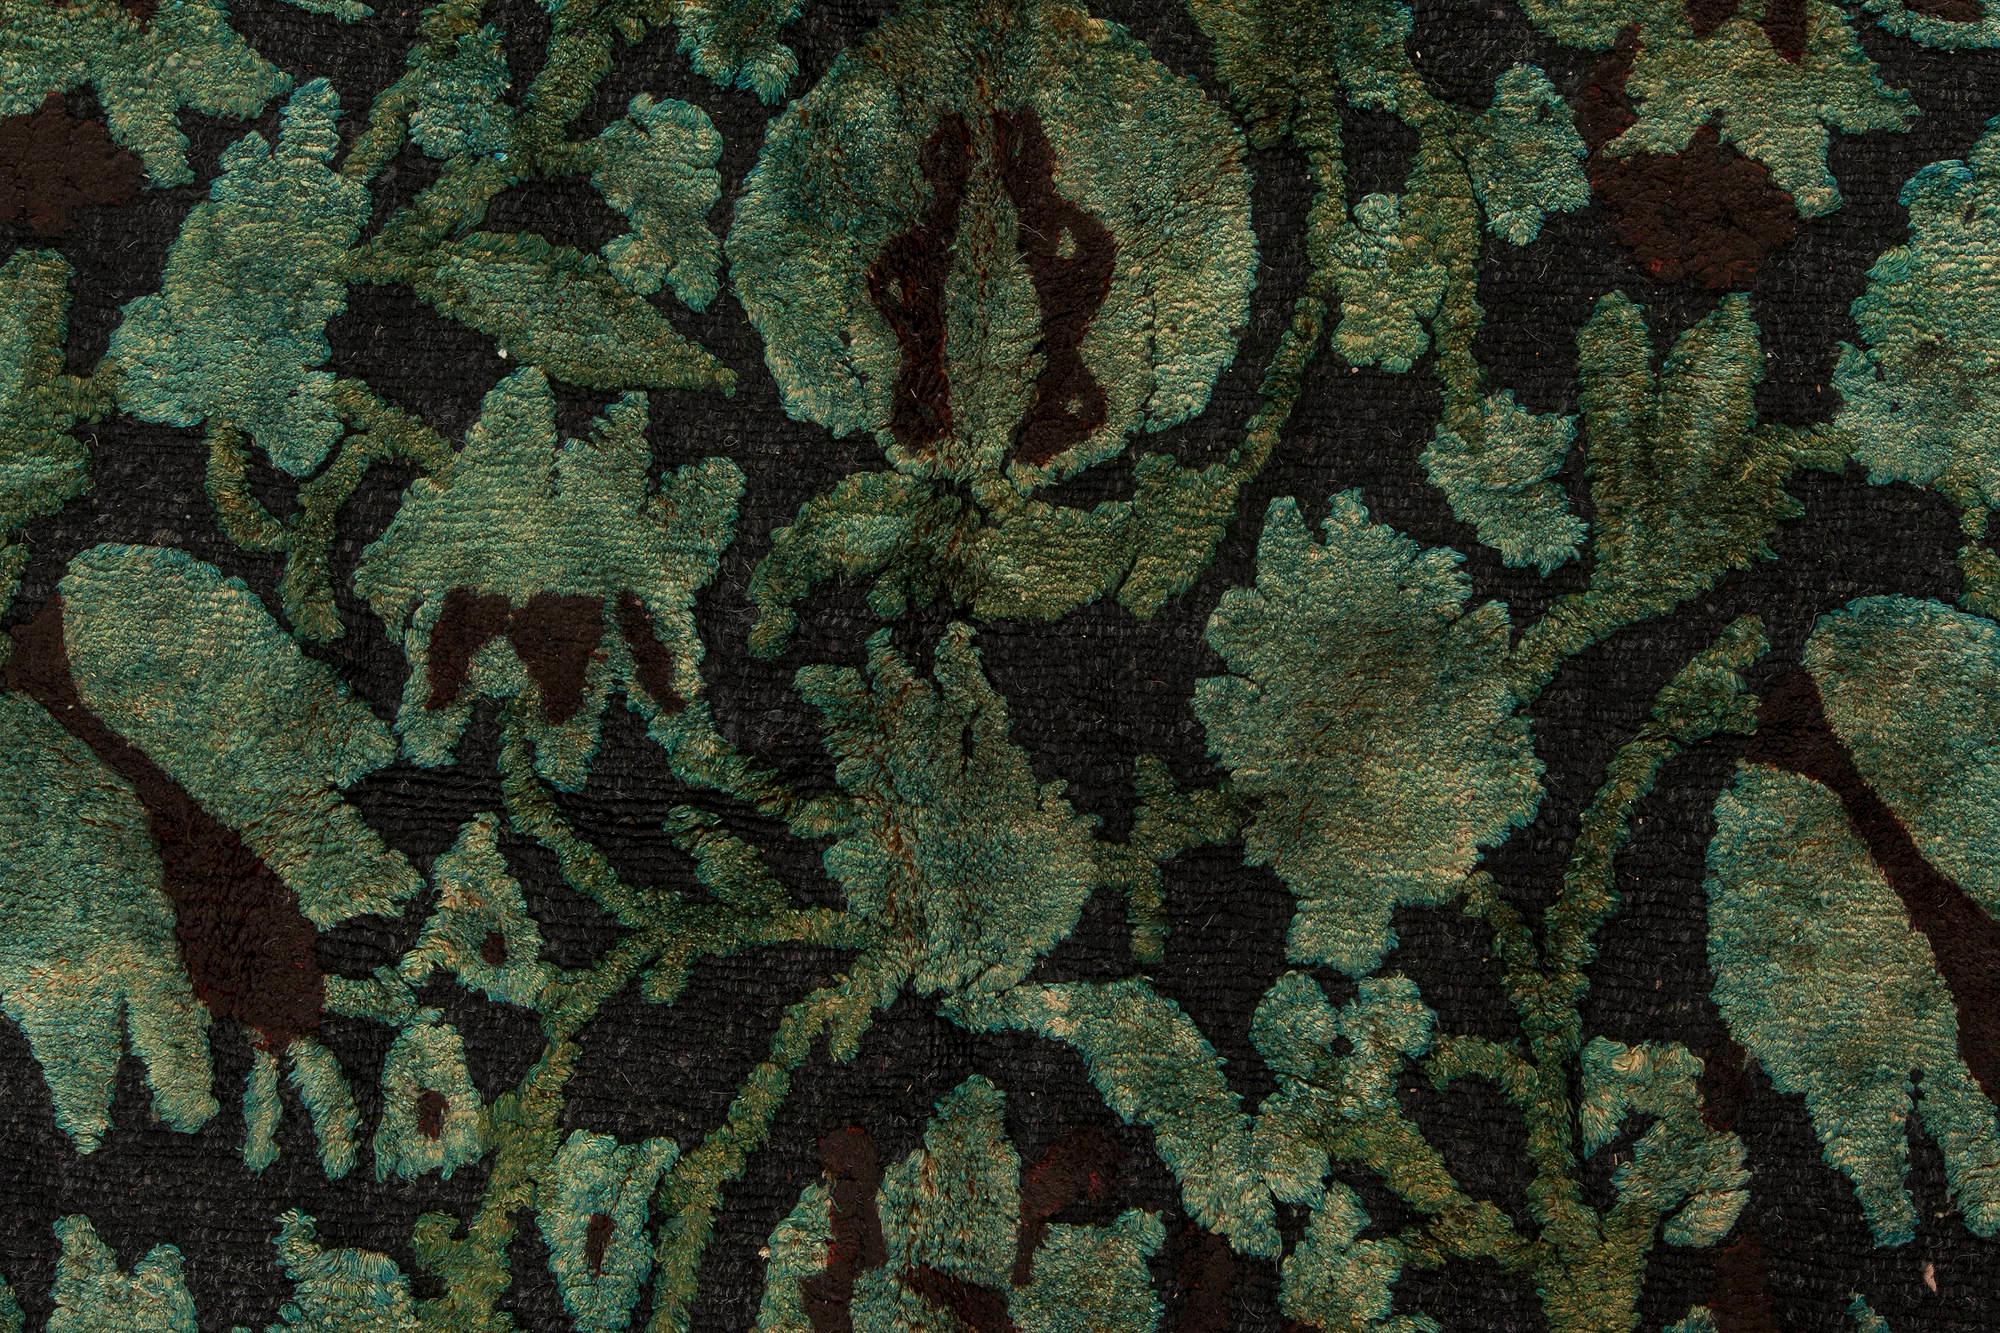 Zeitgenössischer, grün-schwarzer, europäisch inspirierter Tibet-Teppich von Doris Leslie Blau.
Größe: 7'10